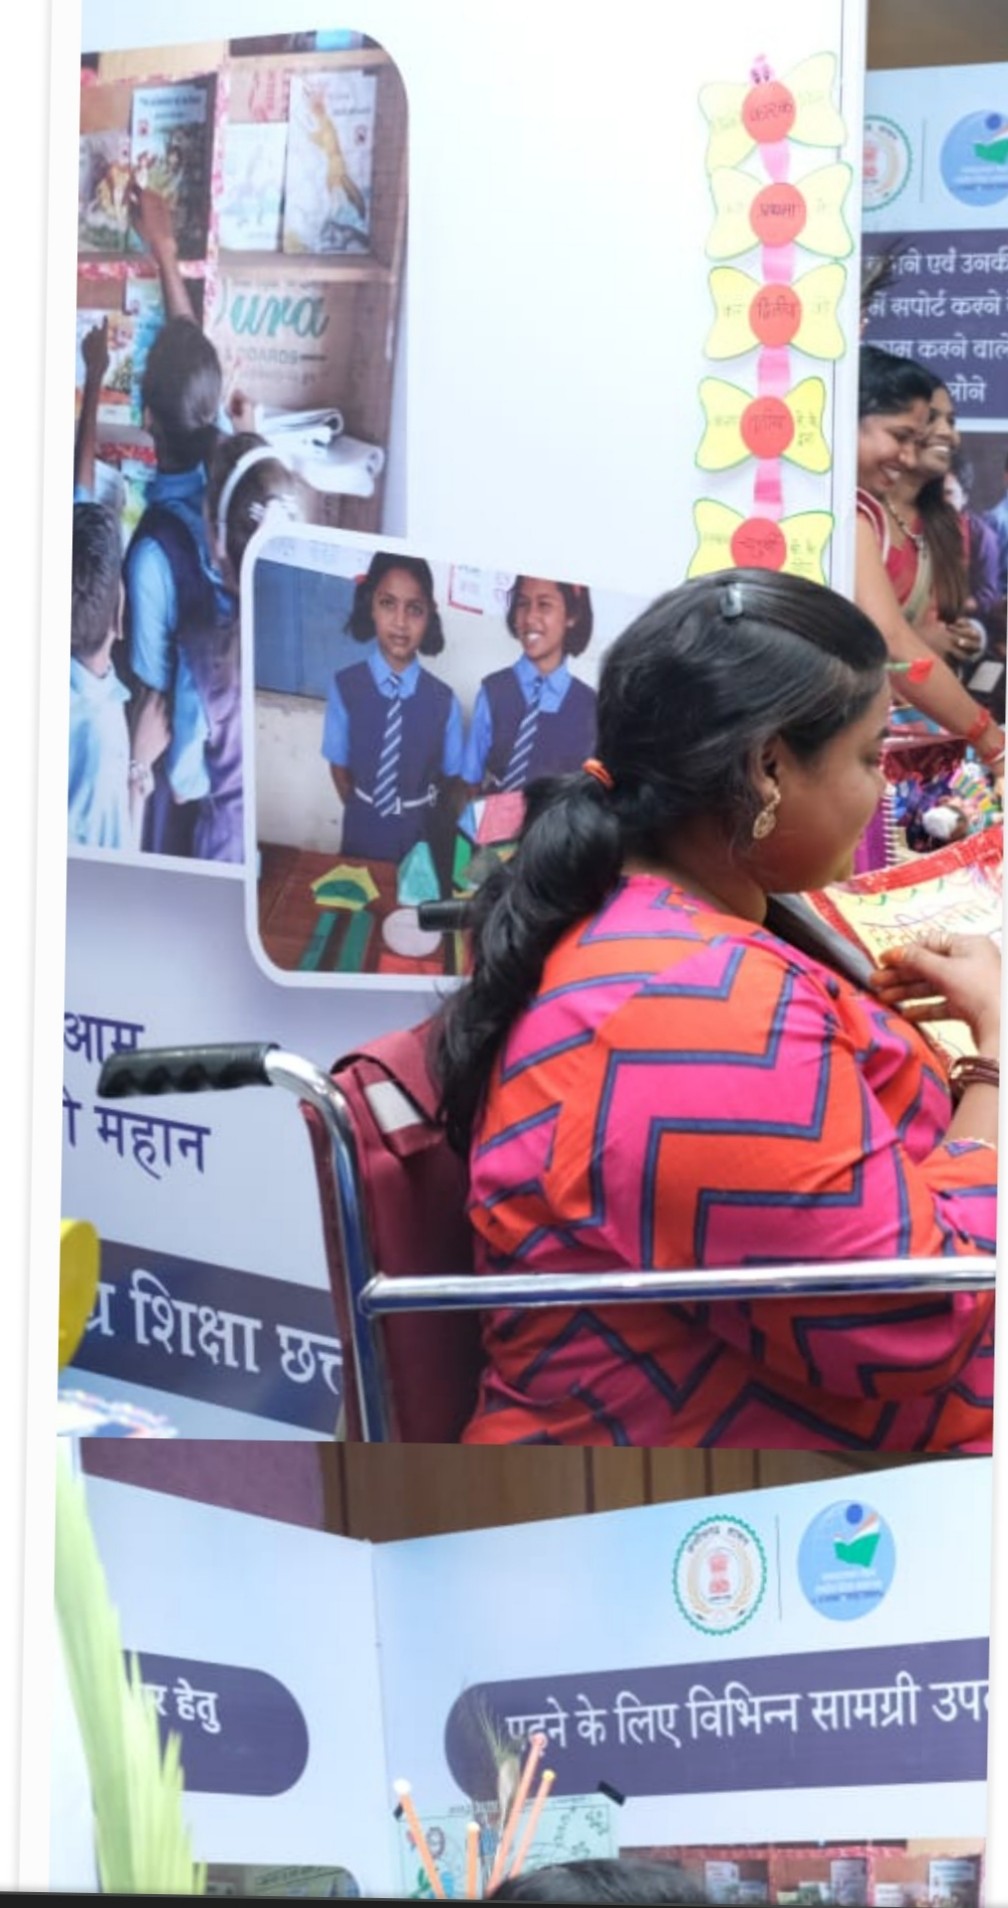 रायपुर : मुख्यमंत्री भूपेश बघेल ने राष्ट्रीय शिक्षा समागम के उद्घाटन समरोह में छत्तीसगढ़ के स्कूलों में शिक्षा को लेकर किए गए नवाचार प्रयोगों पर आधारित प्रदर्शनी का किया अवलोकन